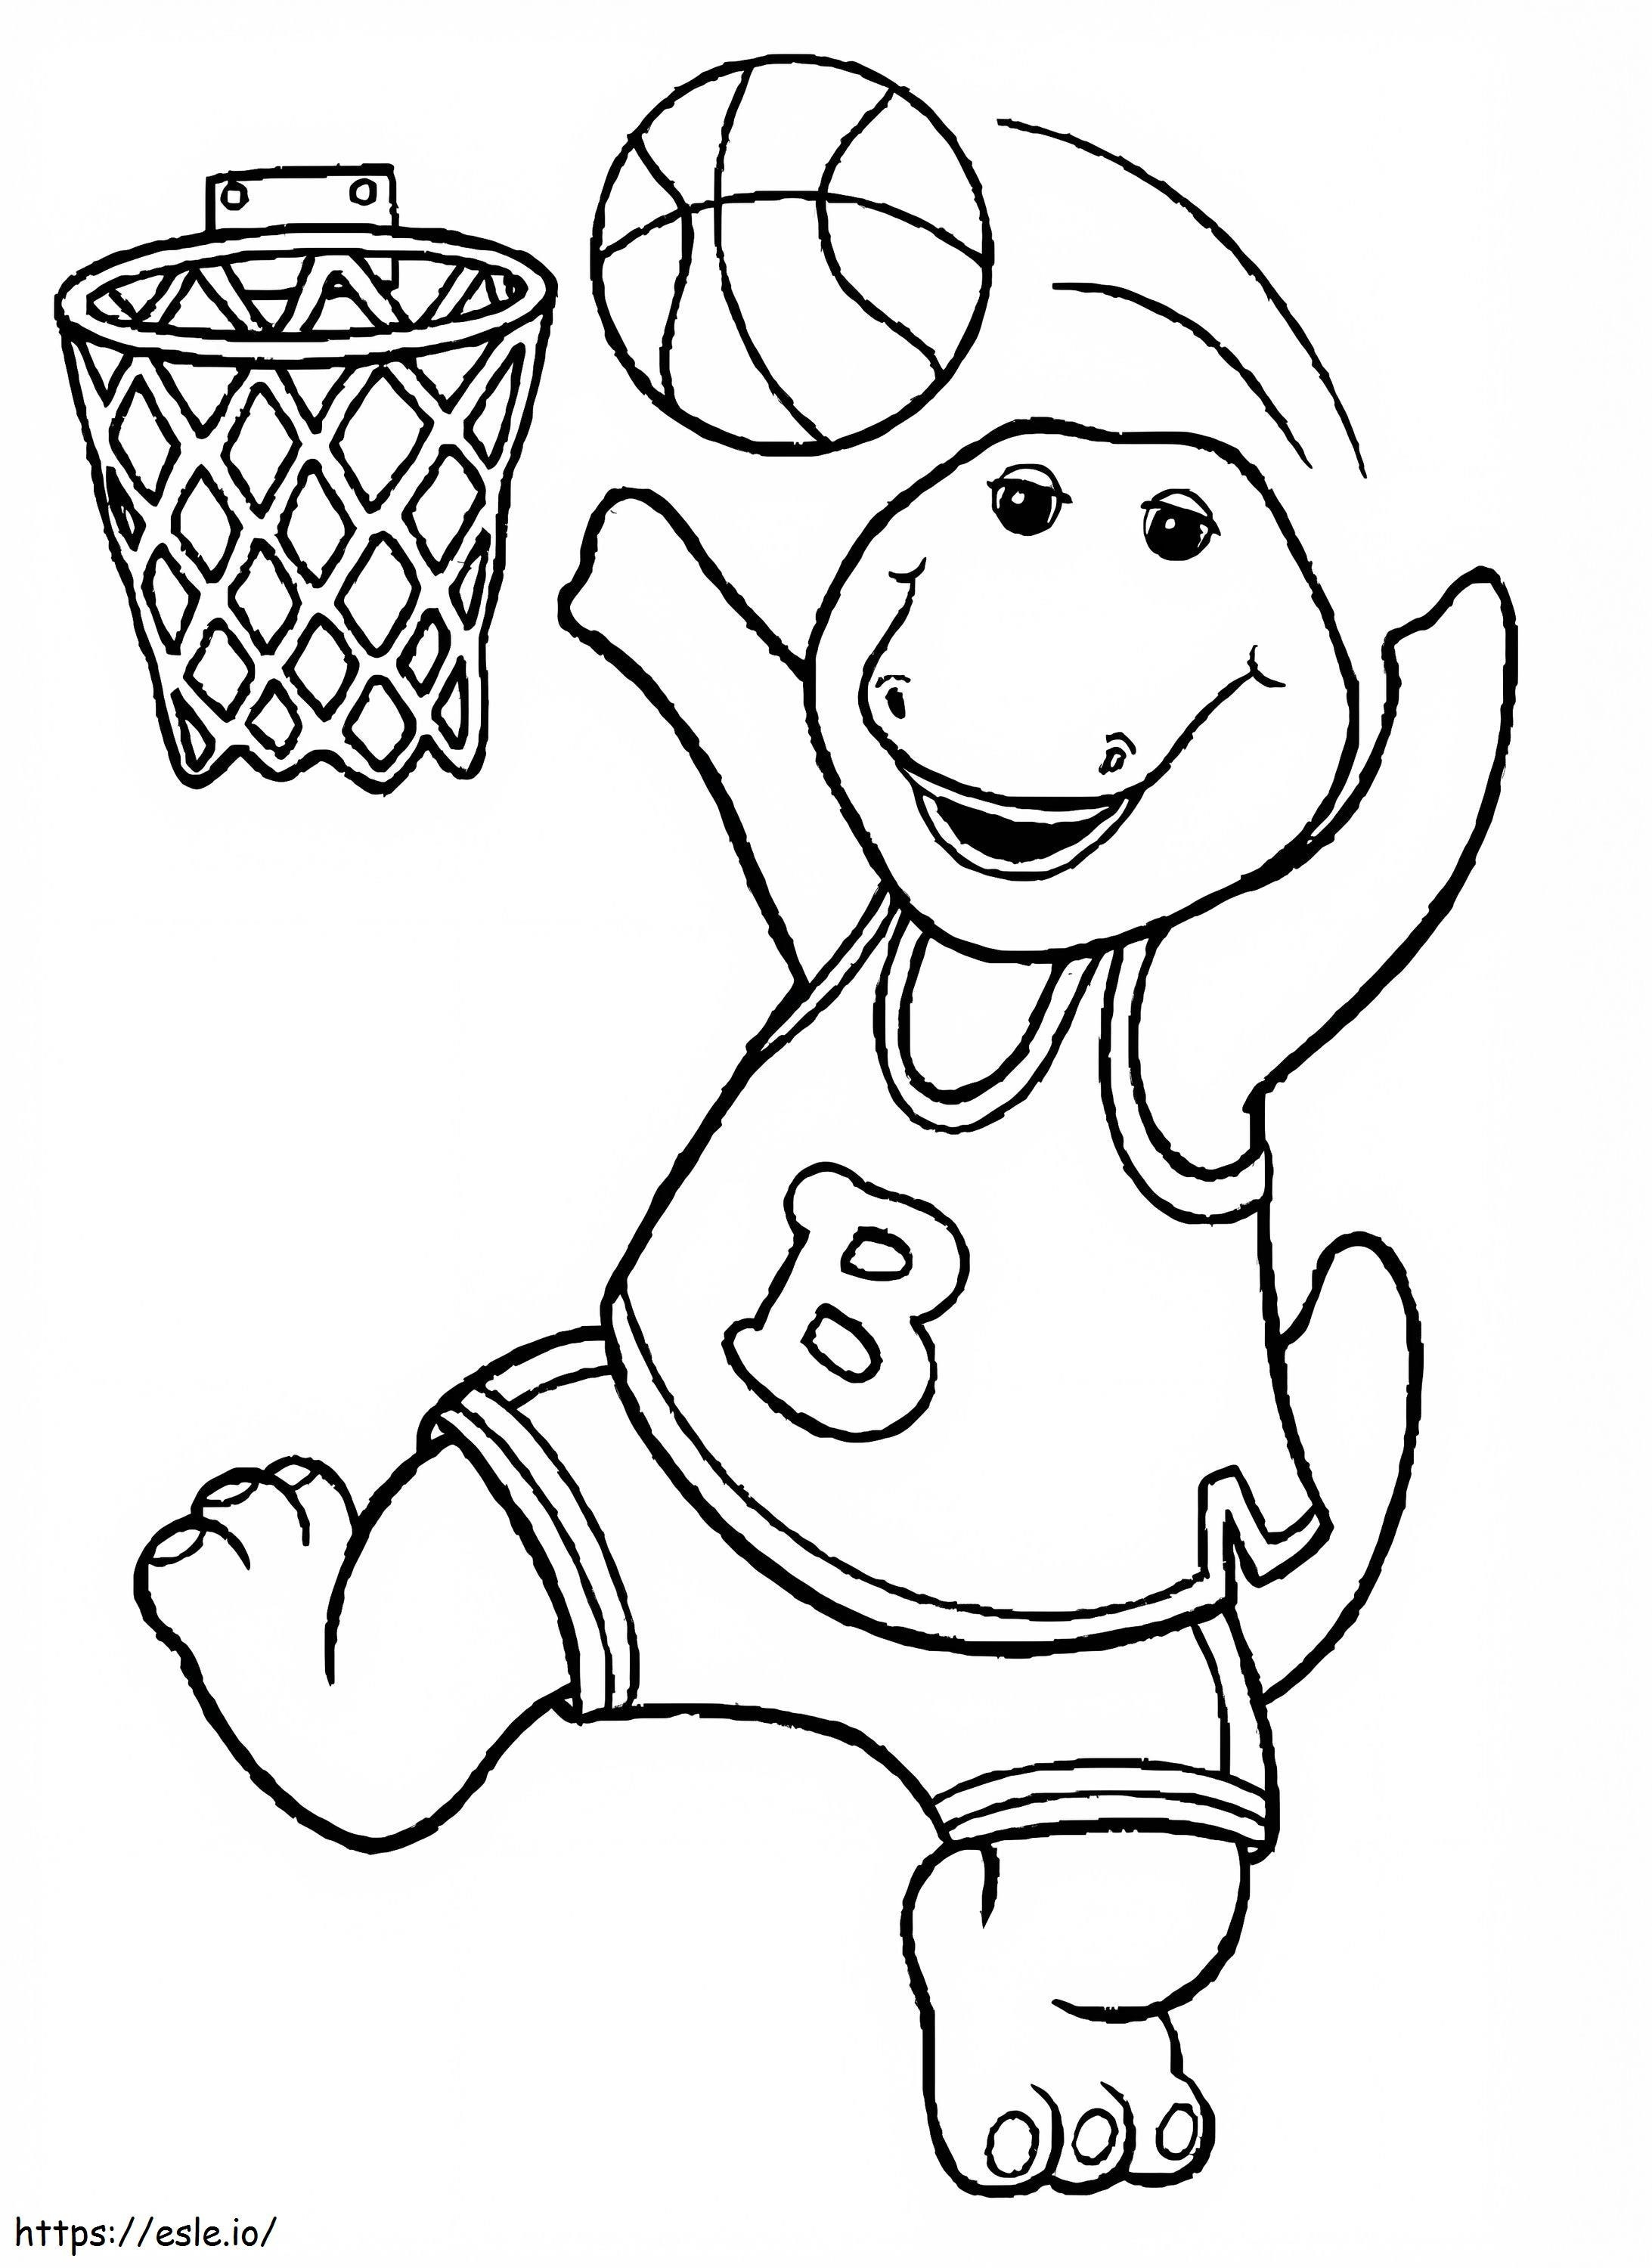 Barney spielt Basketball ausmalbilder